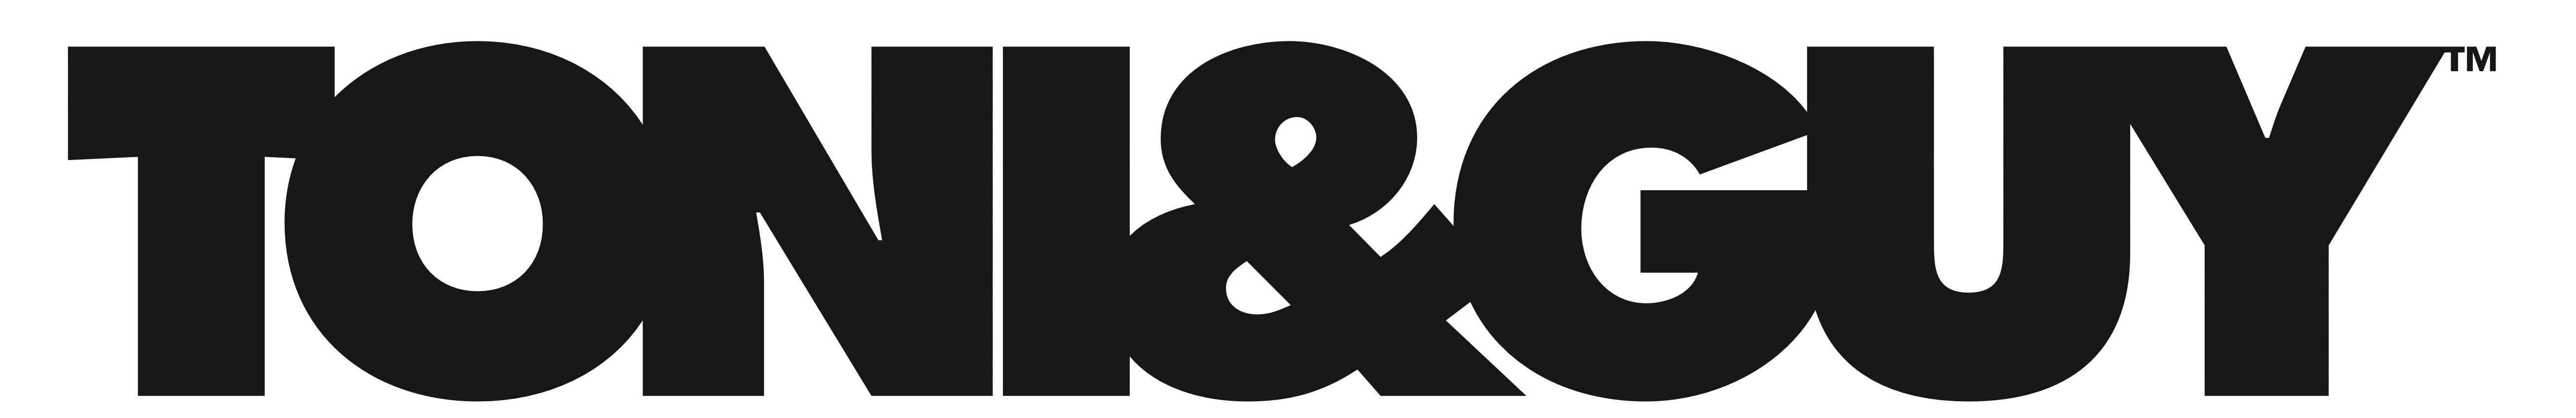 Toni & Guy logo, client of Renommé Event